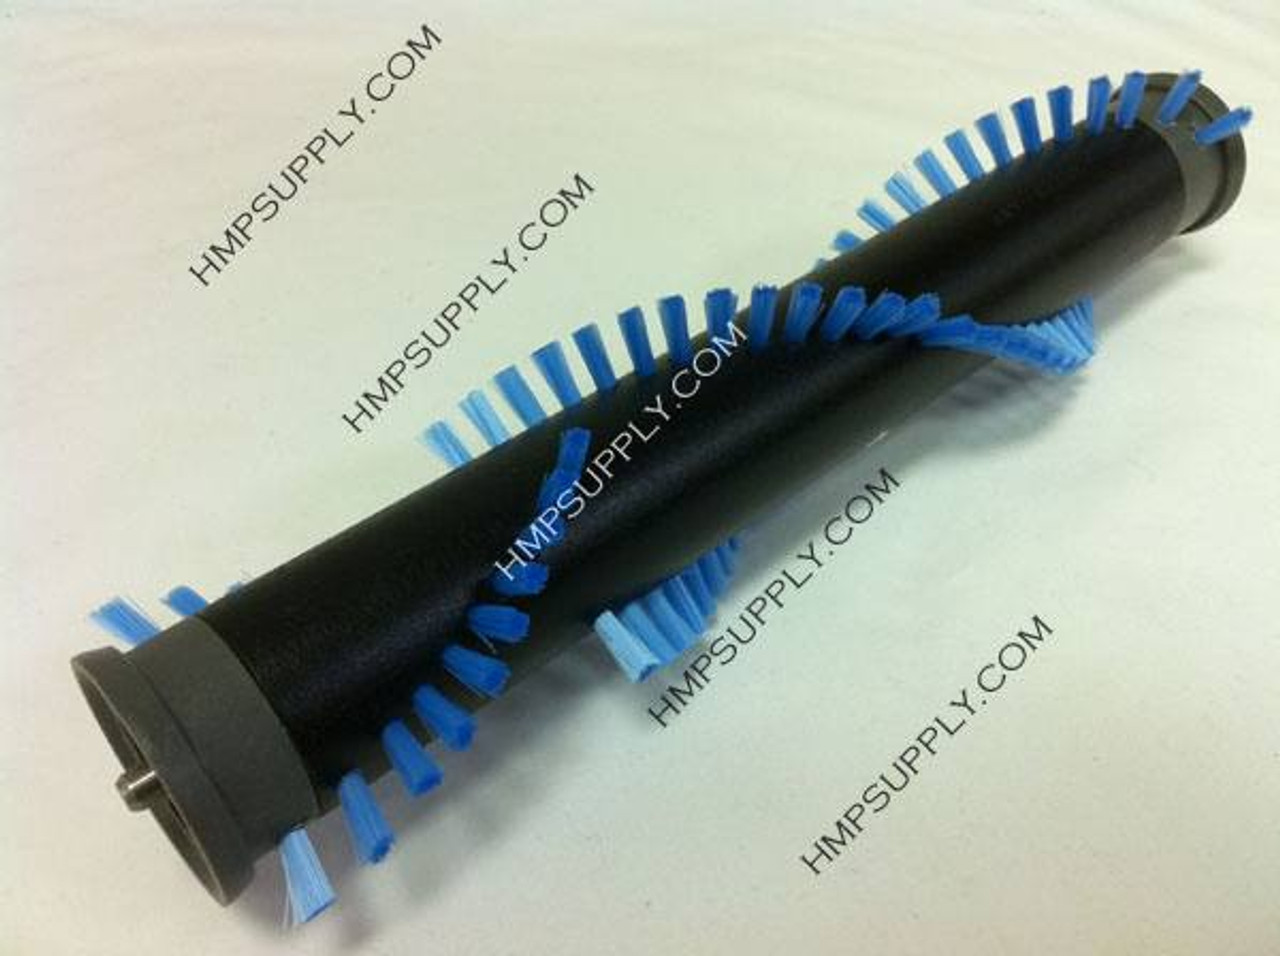 WI 86004950 12" Roller Brush for Windsor Sensor SR12 Vacuums